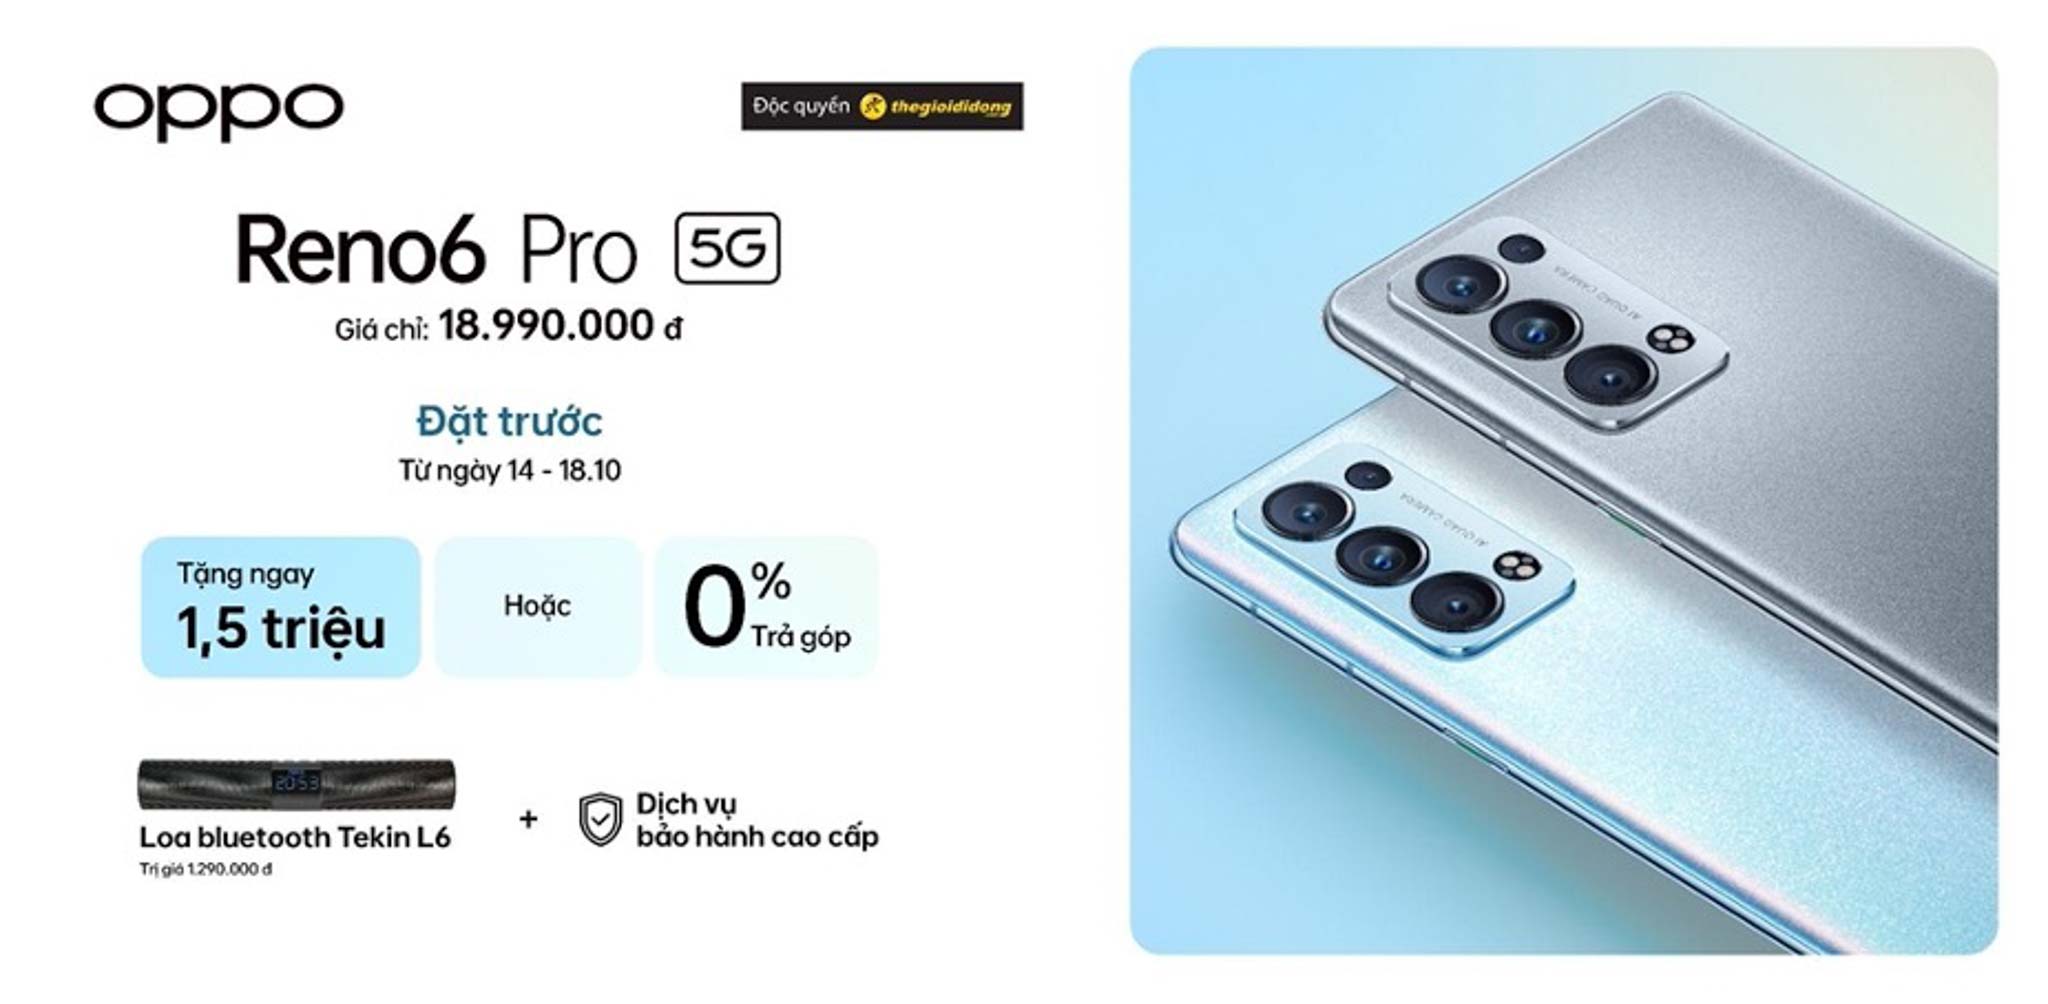 OPPO Reno6 Pro 5G chính thức ra mắt với trải nghiệm toàn diện nhất phân khúc